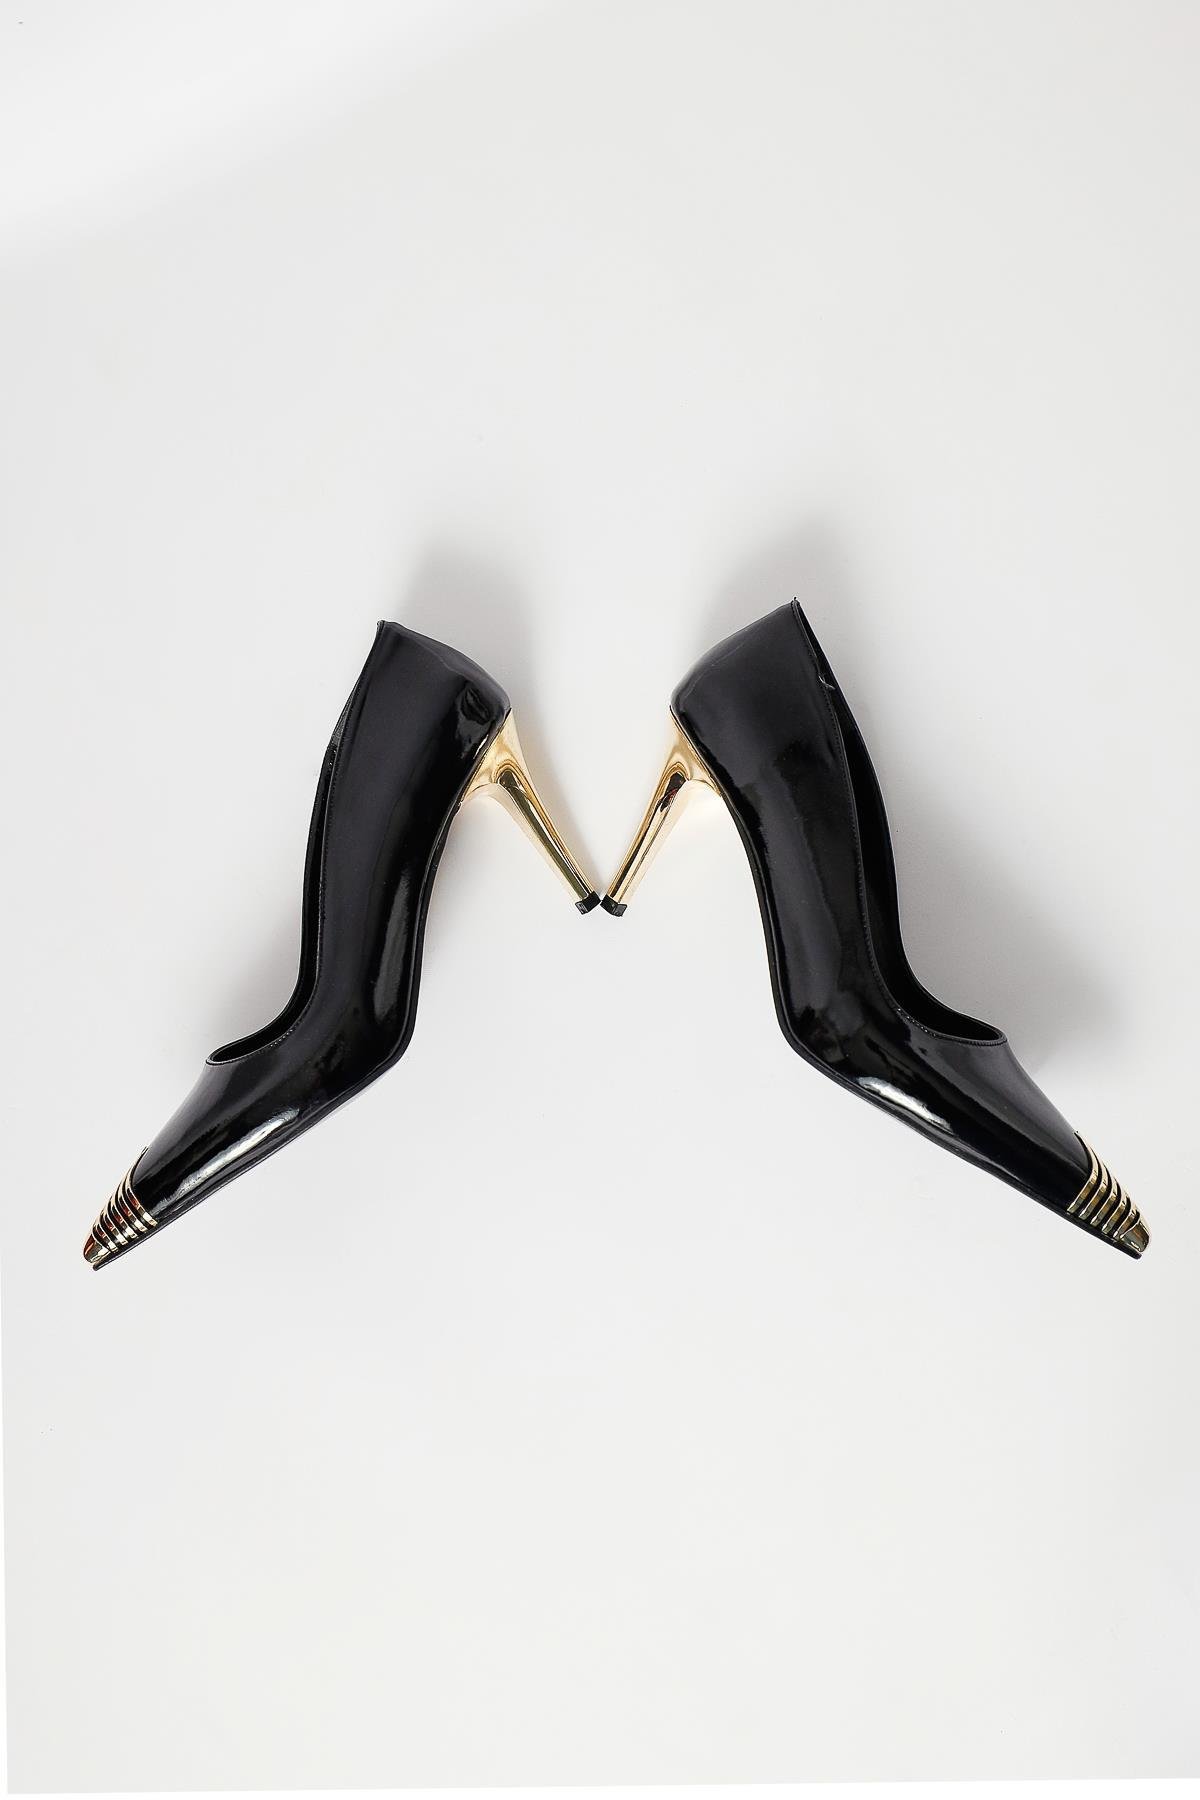 Carly Siyah Altın Detaylı Sivri Burunlu İnce Topuklu Ayakkabı | Limoya.com  ile Modayı Keşfet!